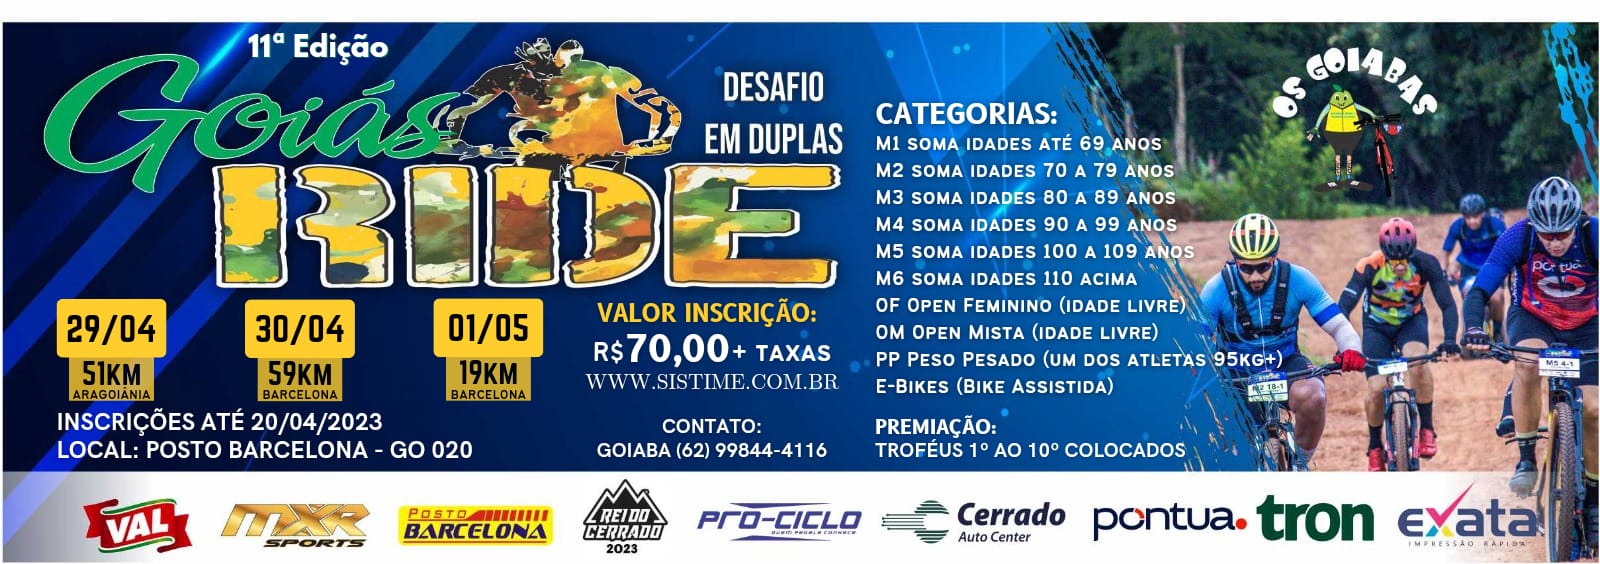 goias-ride-2023-edicao-11-banner